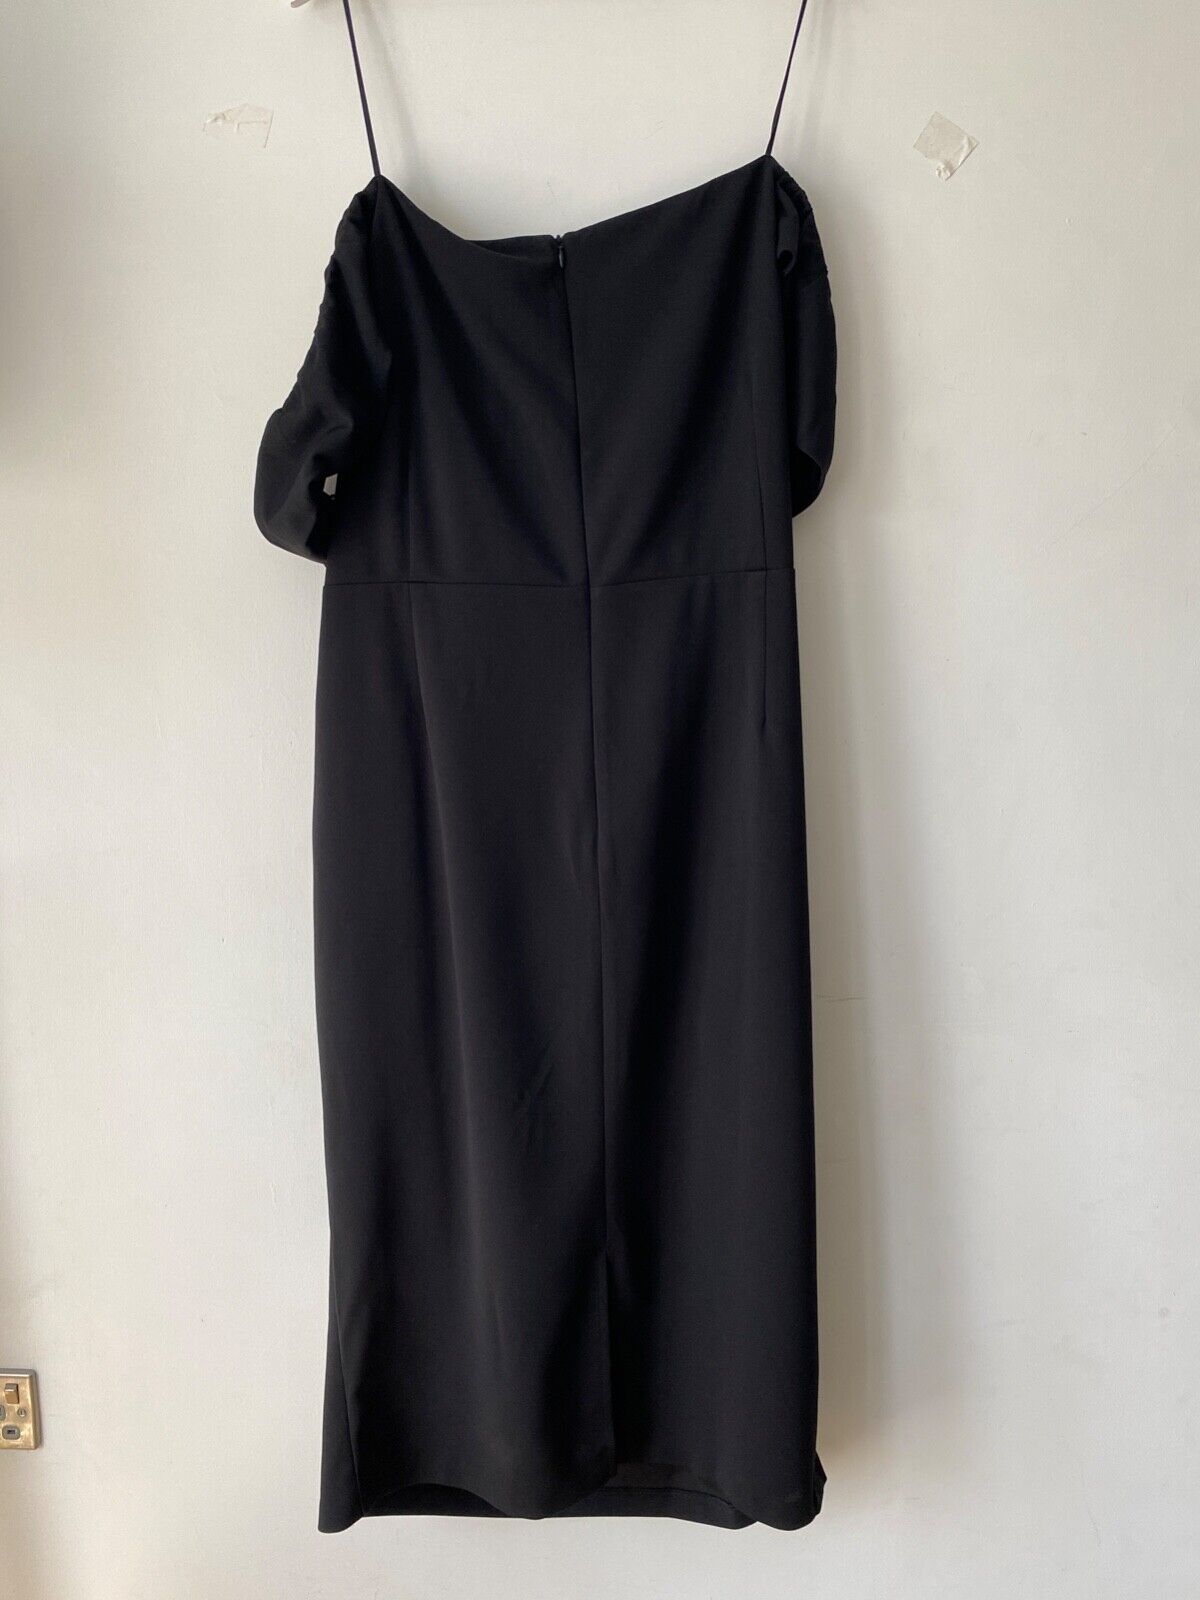 Very Black Off Shoulder Dress Size 28